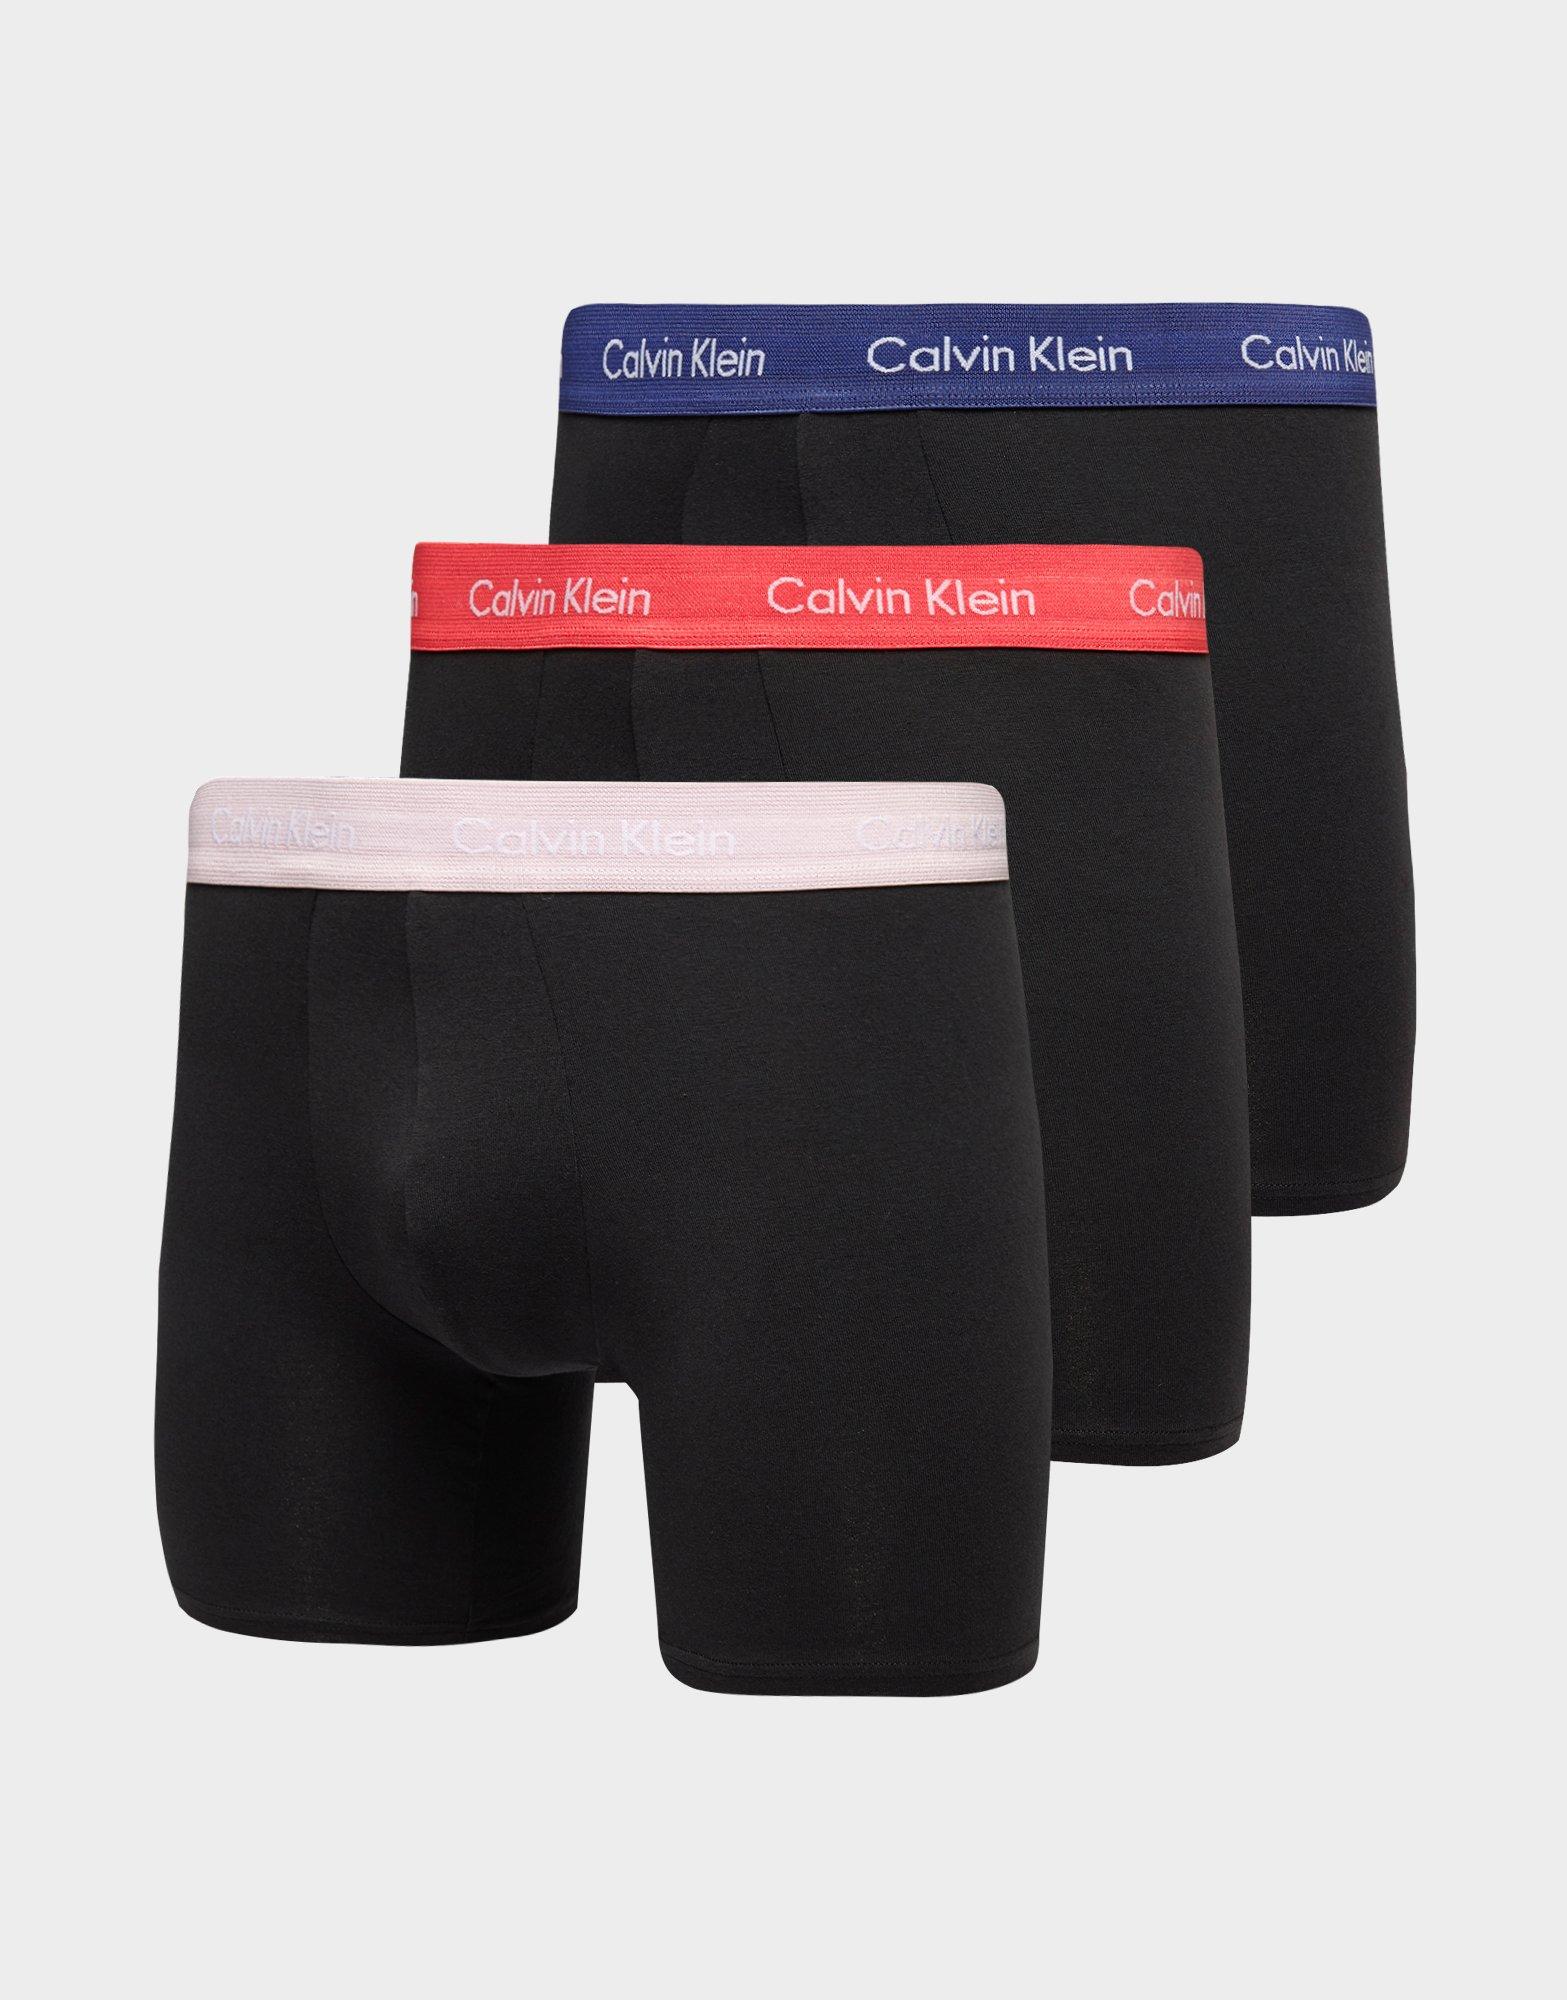 replica calvin klein boxers